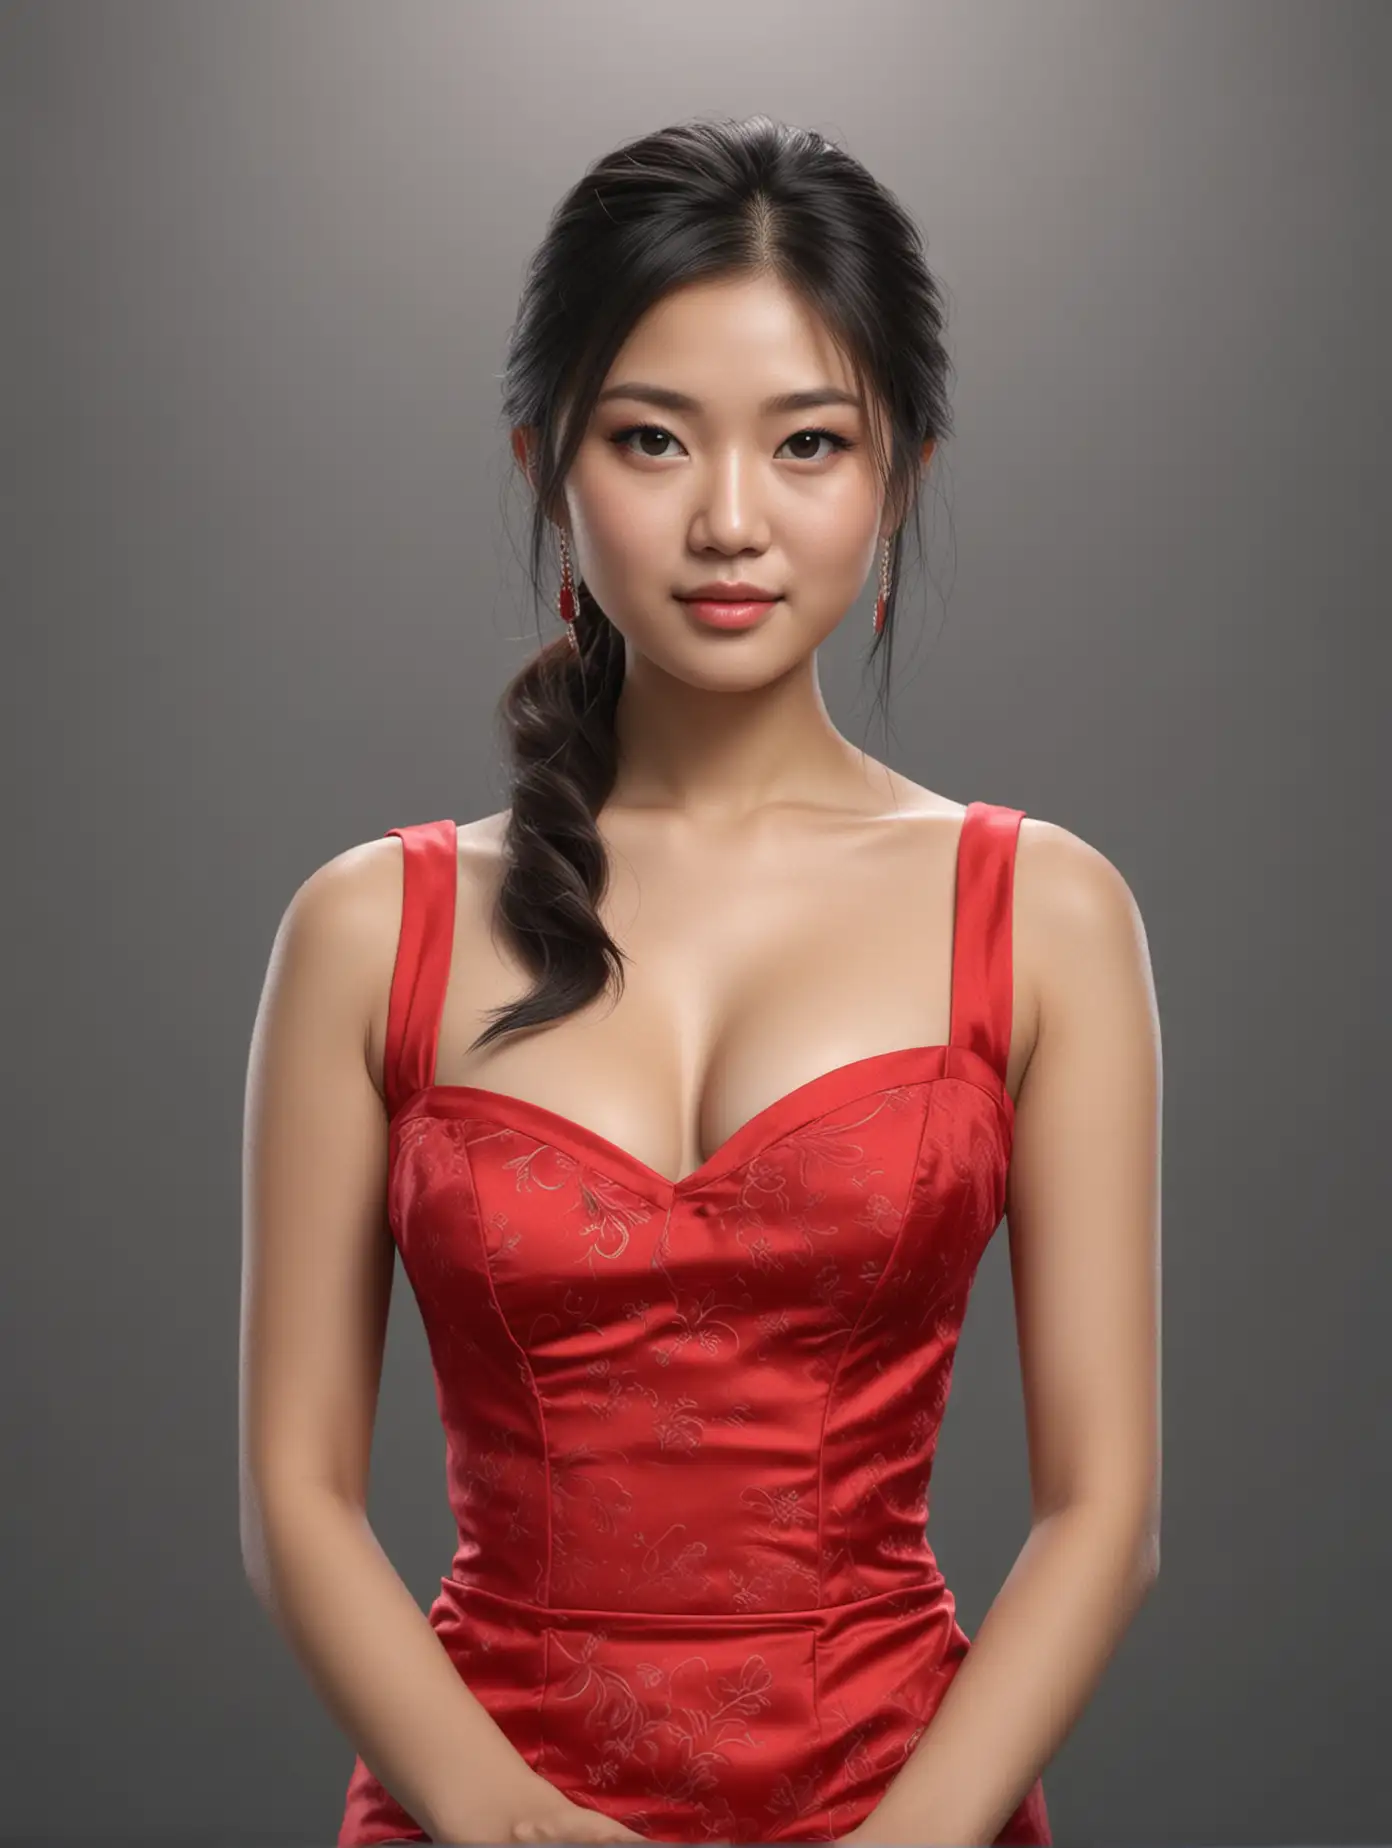 Elegant Asian Casino Girl in Vibrant Red Dress